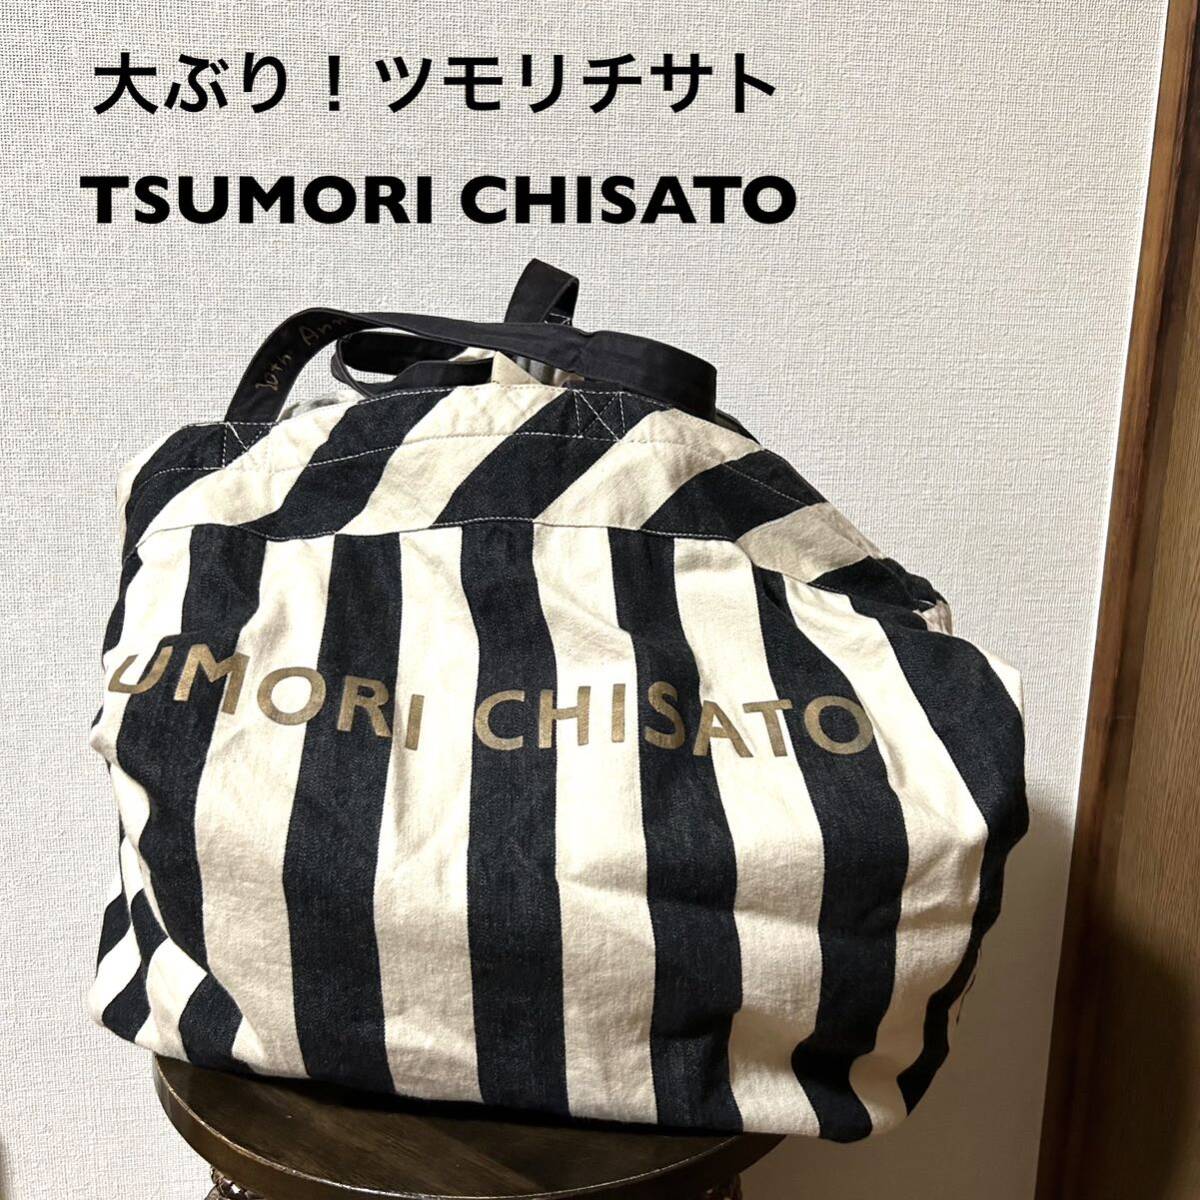 大ぶり！ツモリチサト TSUMORI CHISATO 20th Anniversary トートバッグ ストライプ 大容量